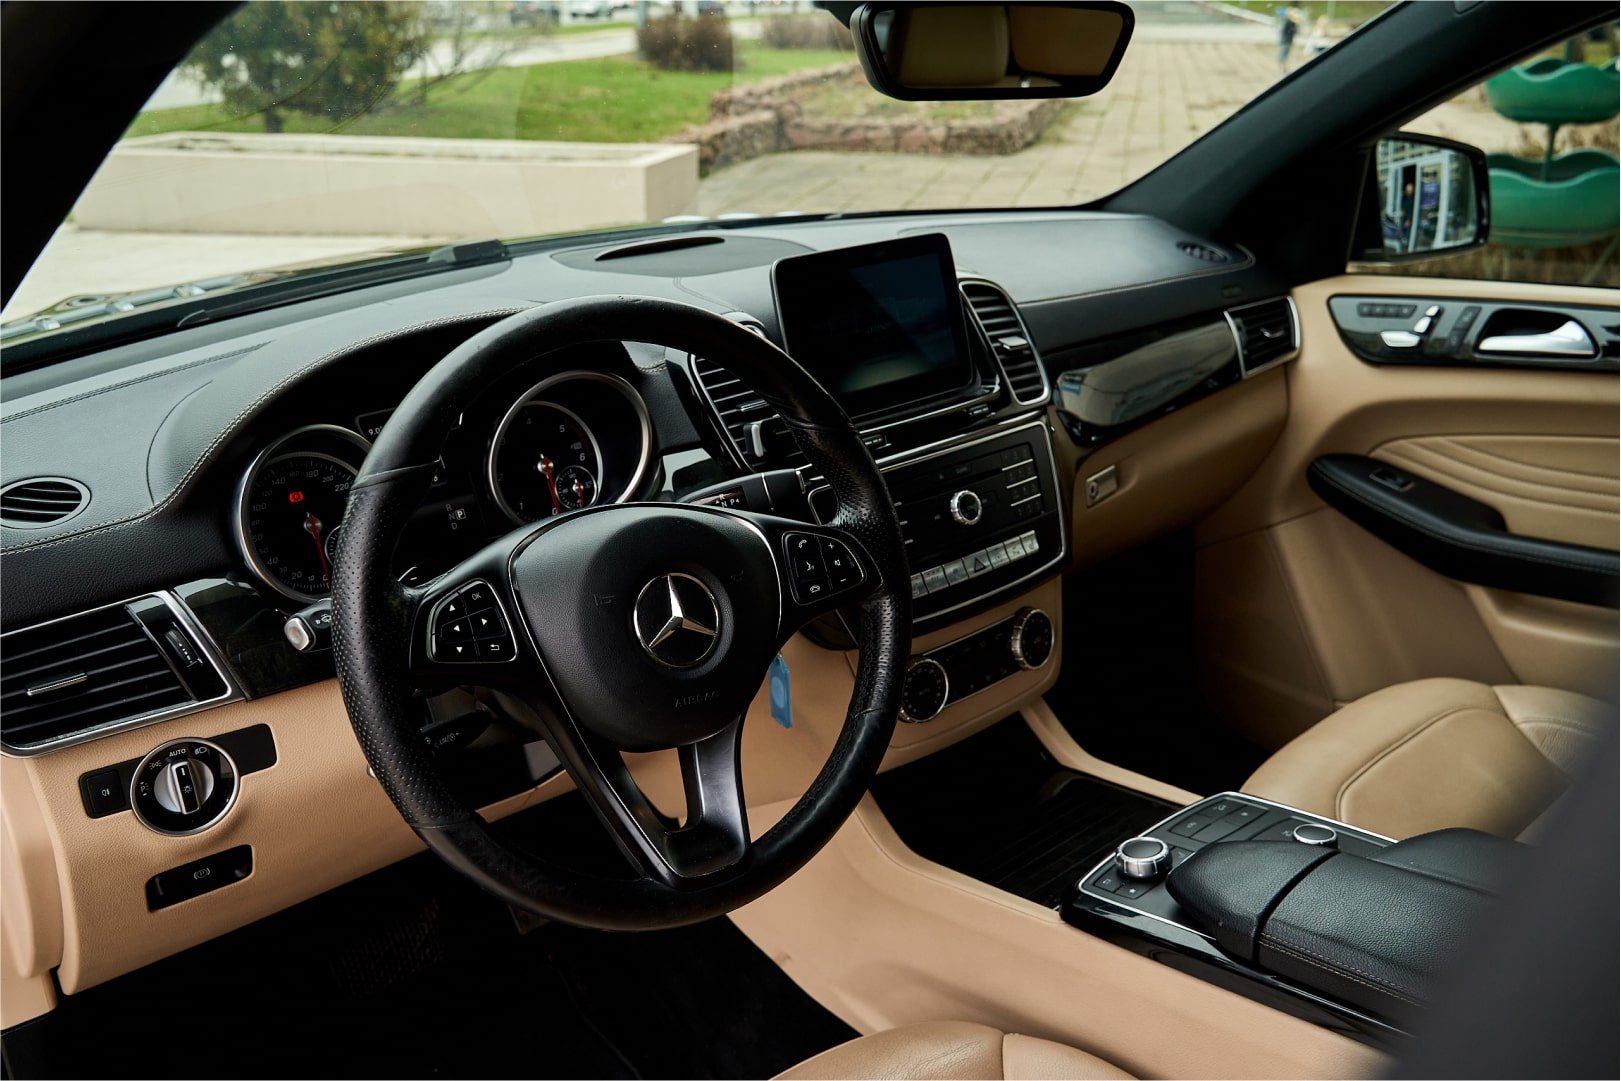 Аренда  Mercedes Benz GLE Coupe 4MATIC Limited Edition  6 класса 2018 года в городе Минск от 175 $/сутки,  двигатель: ДТ , объем 3.0 литров, КАСКО (Мультидрайв), без водителя, вид 4 - West Group